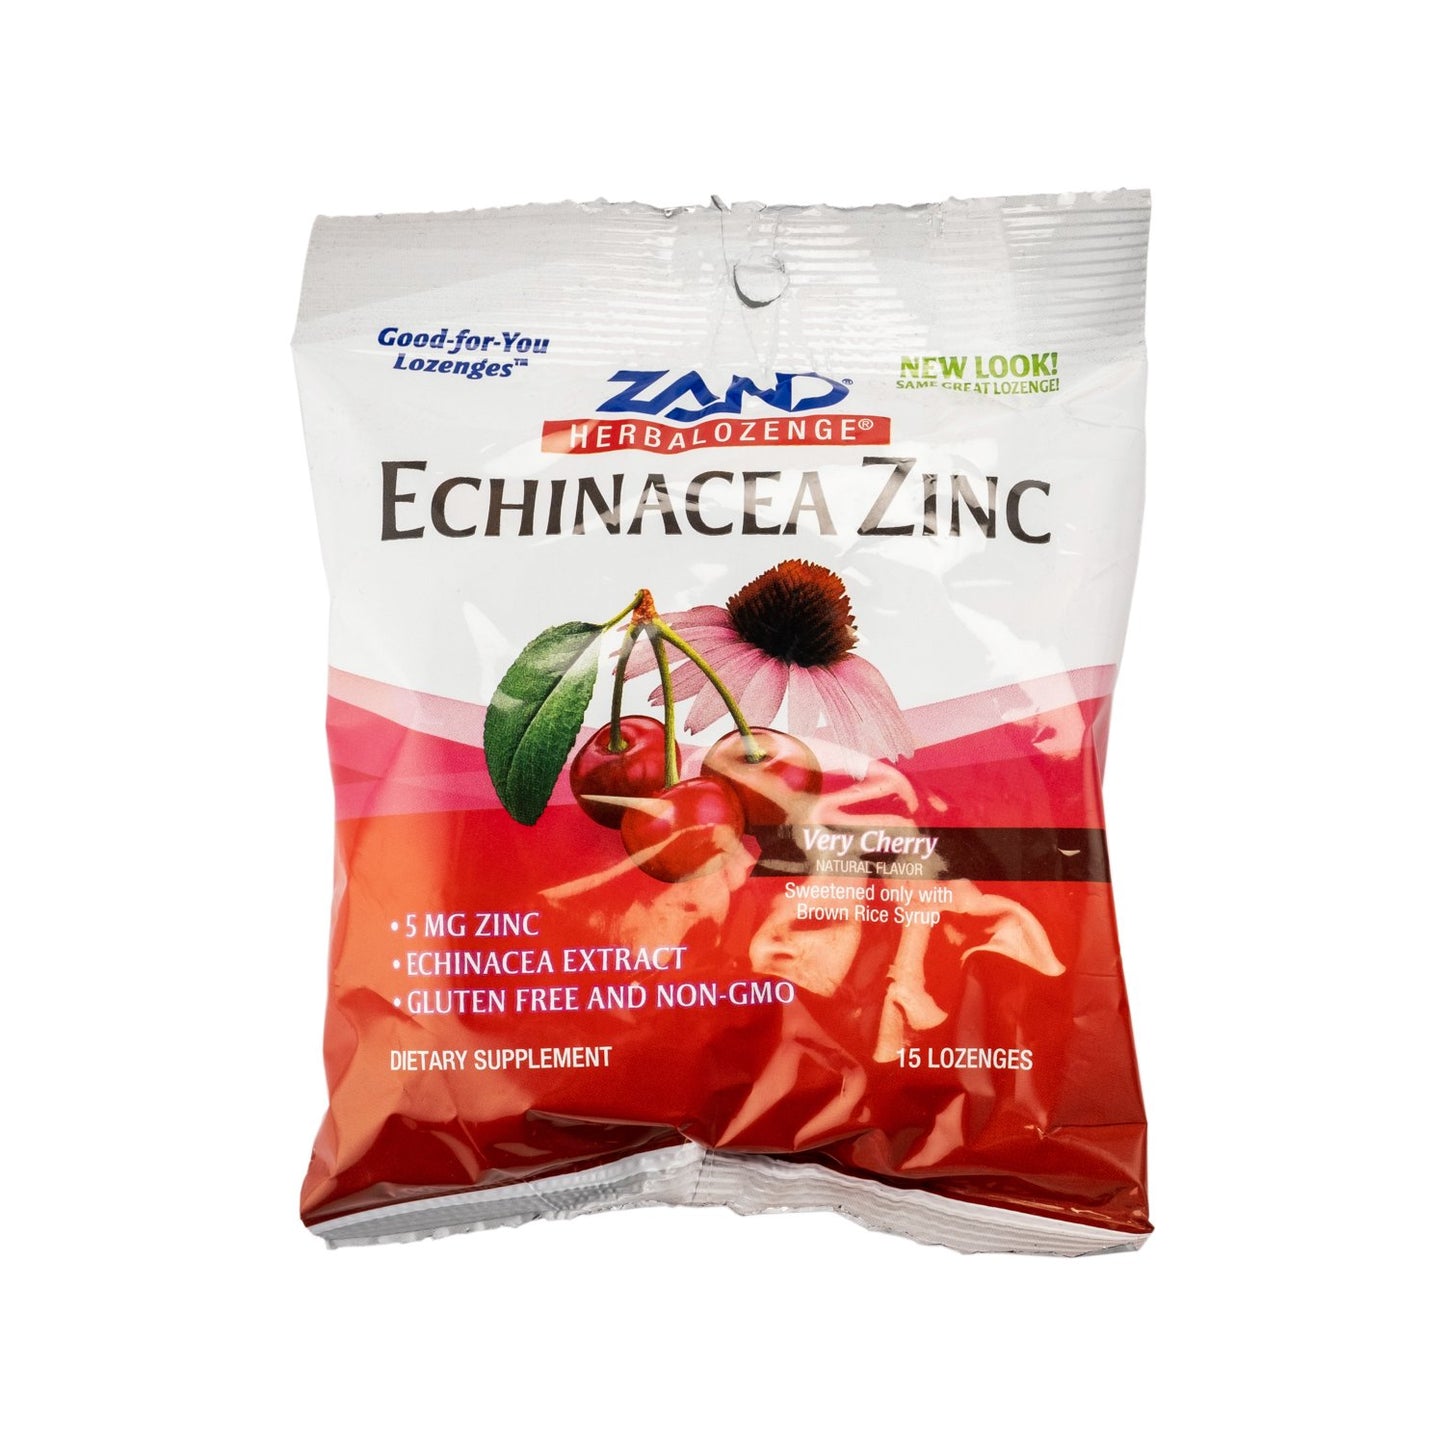 Zand Echinacea Zinc Herbalozenge Very Cherry 15 Lozenges